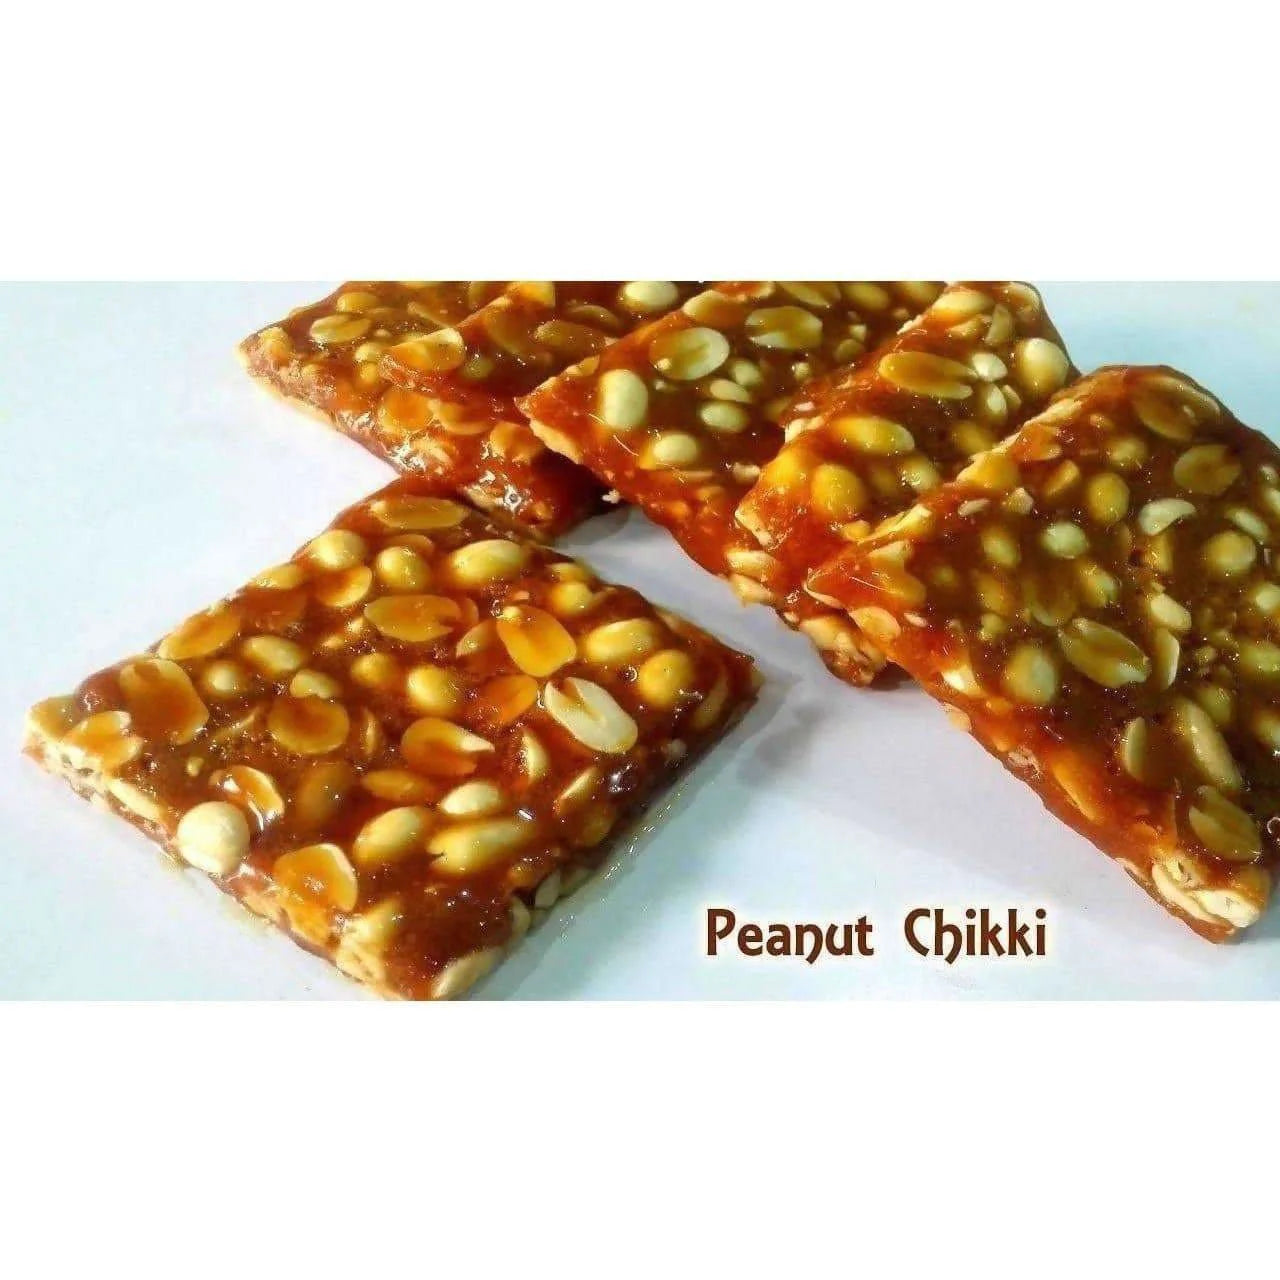 Almond House Peanut Chikki / Palli patti / Groundnut Chikki